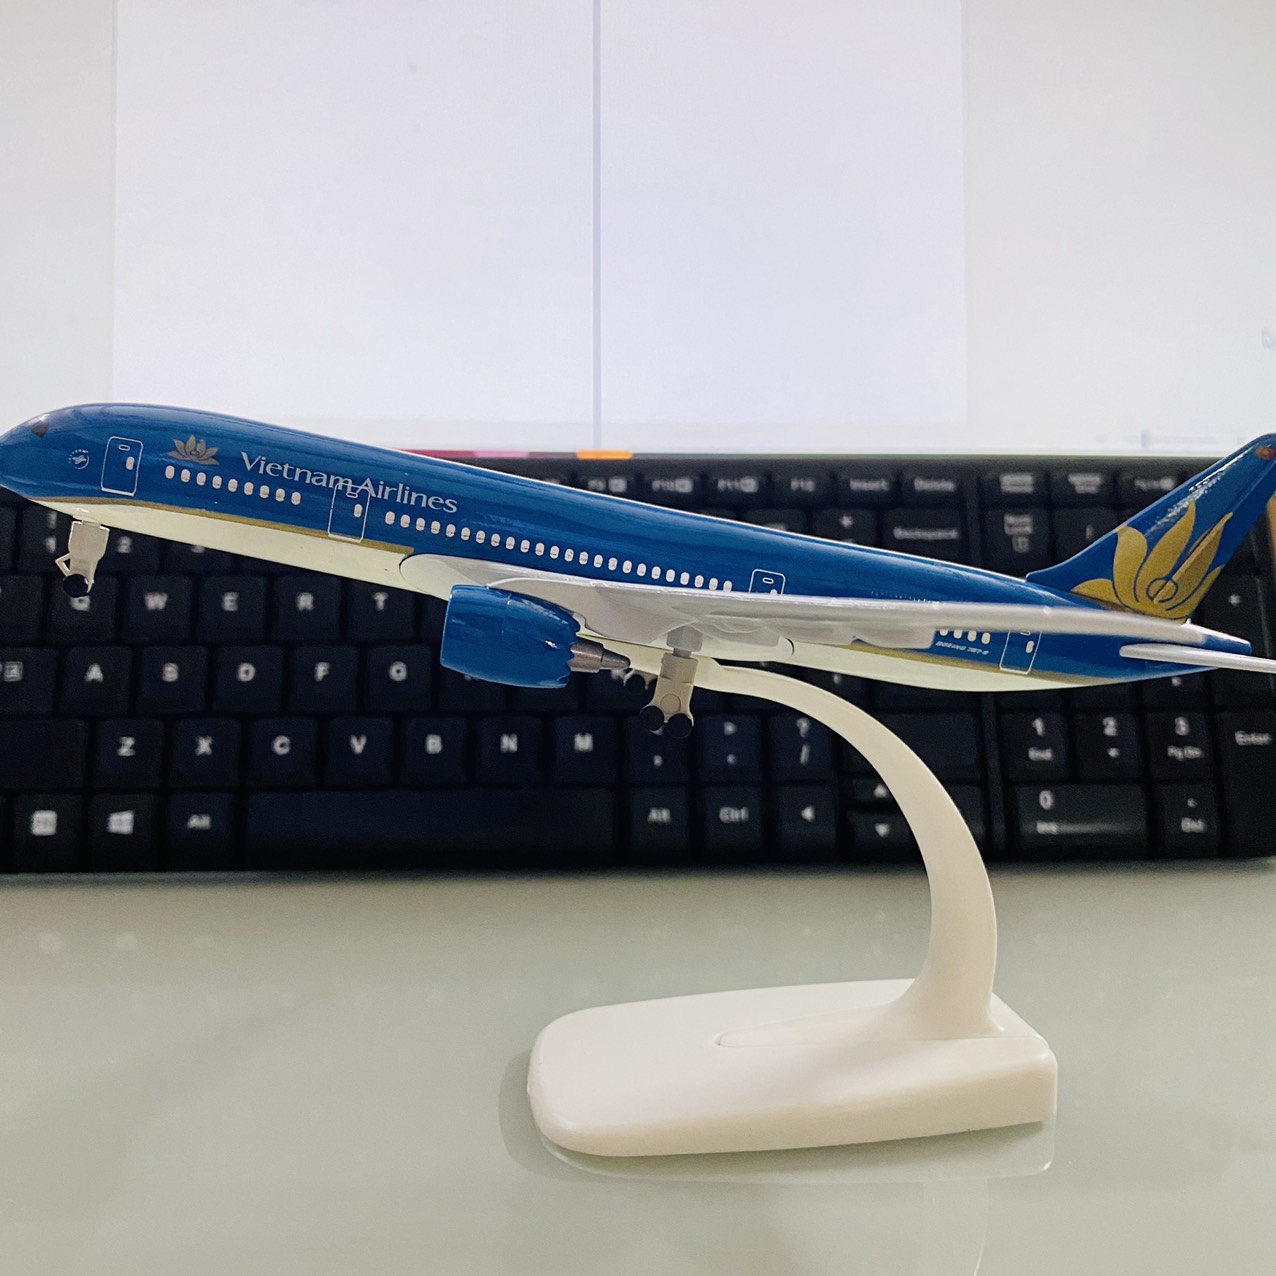 Mô Hình Máy Bay  Tổng Hợp Máy bay mô hình các hãng hàng không đúc Kim Loại  có kèm đế trưng bày  Z Shop  HolCim  Kênh Xây Dựng Và Nội Thất